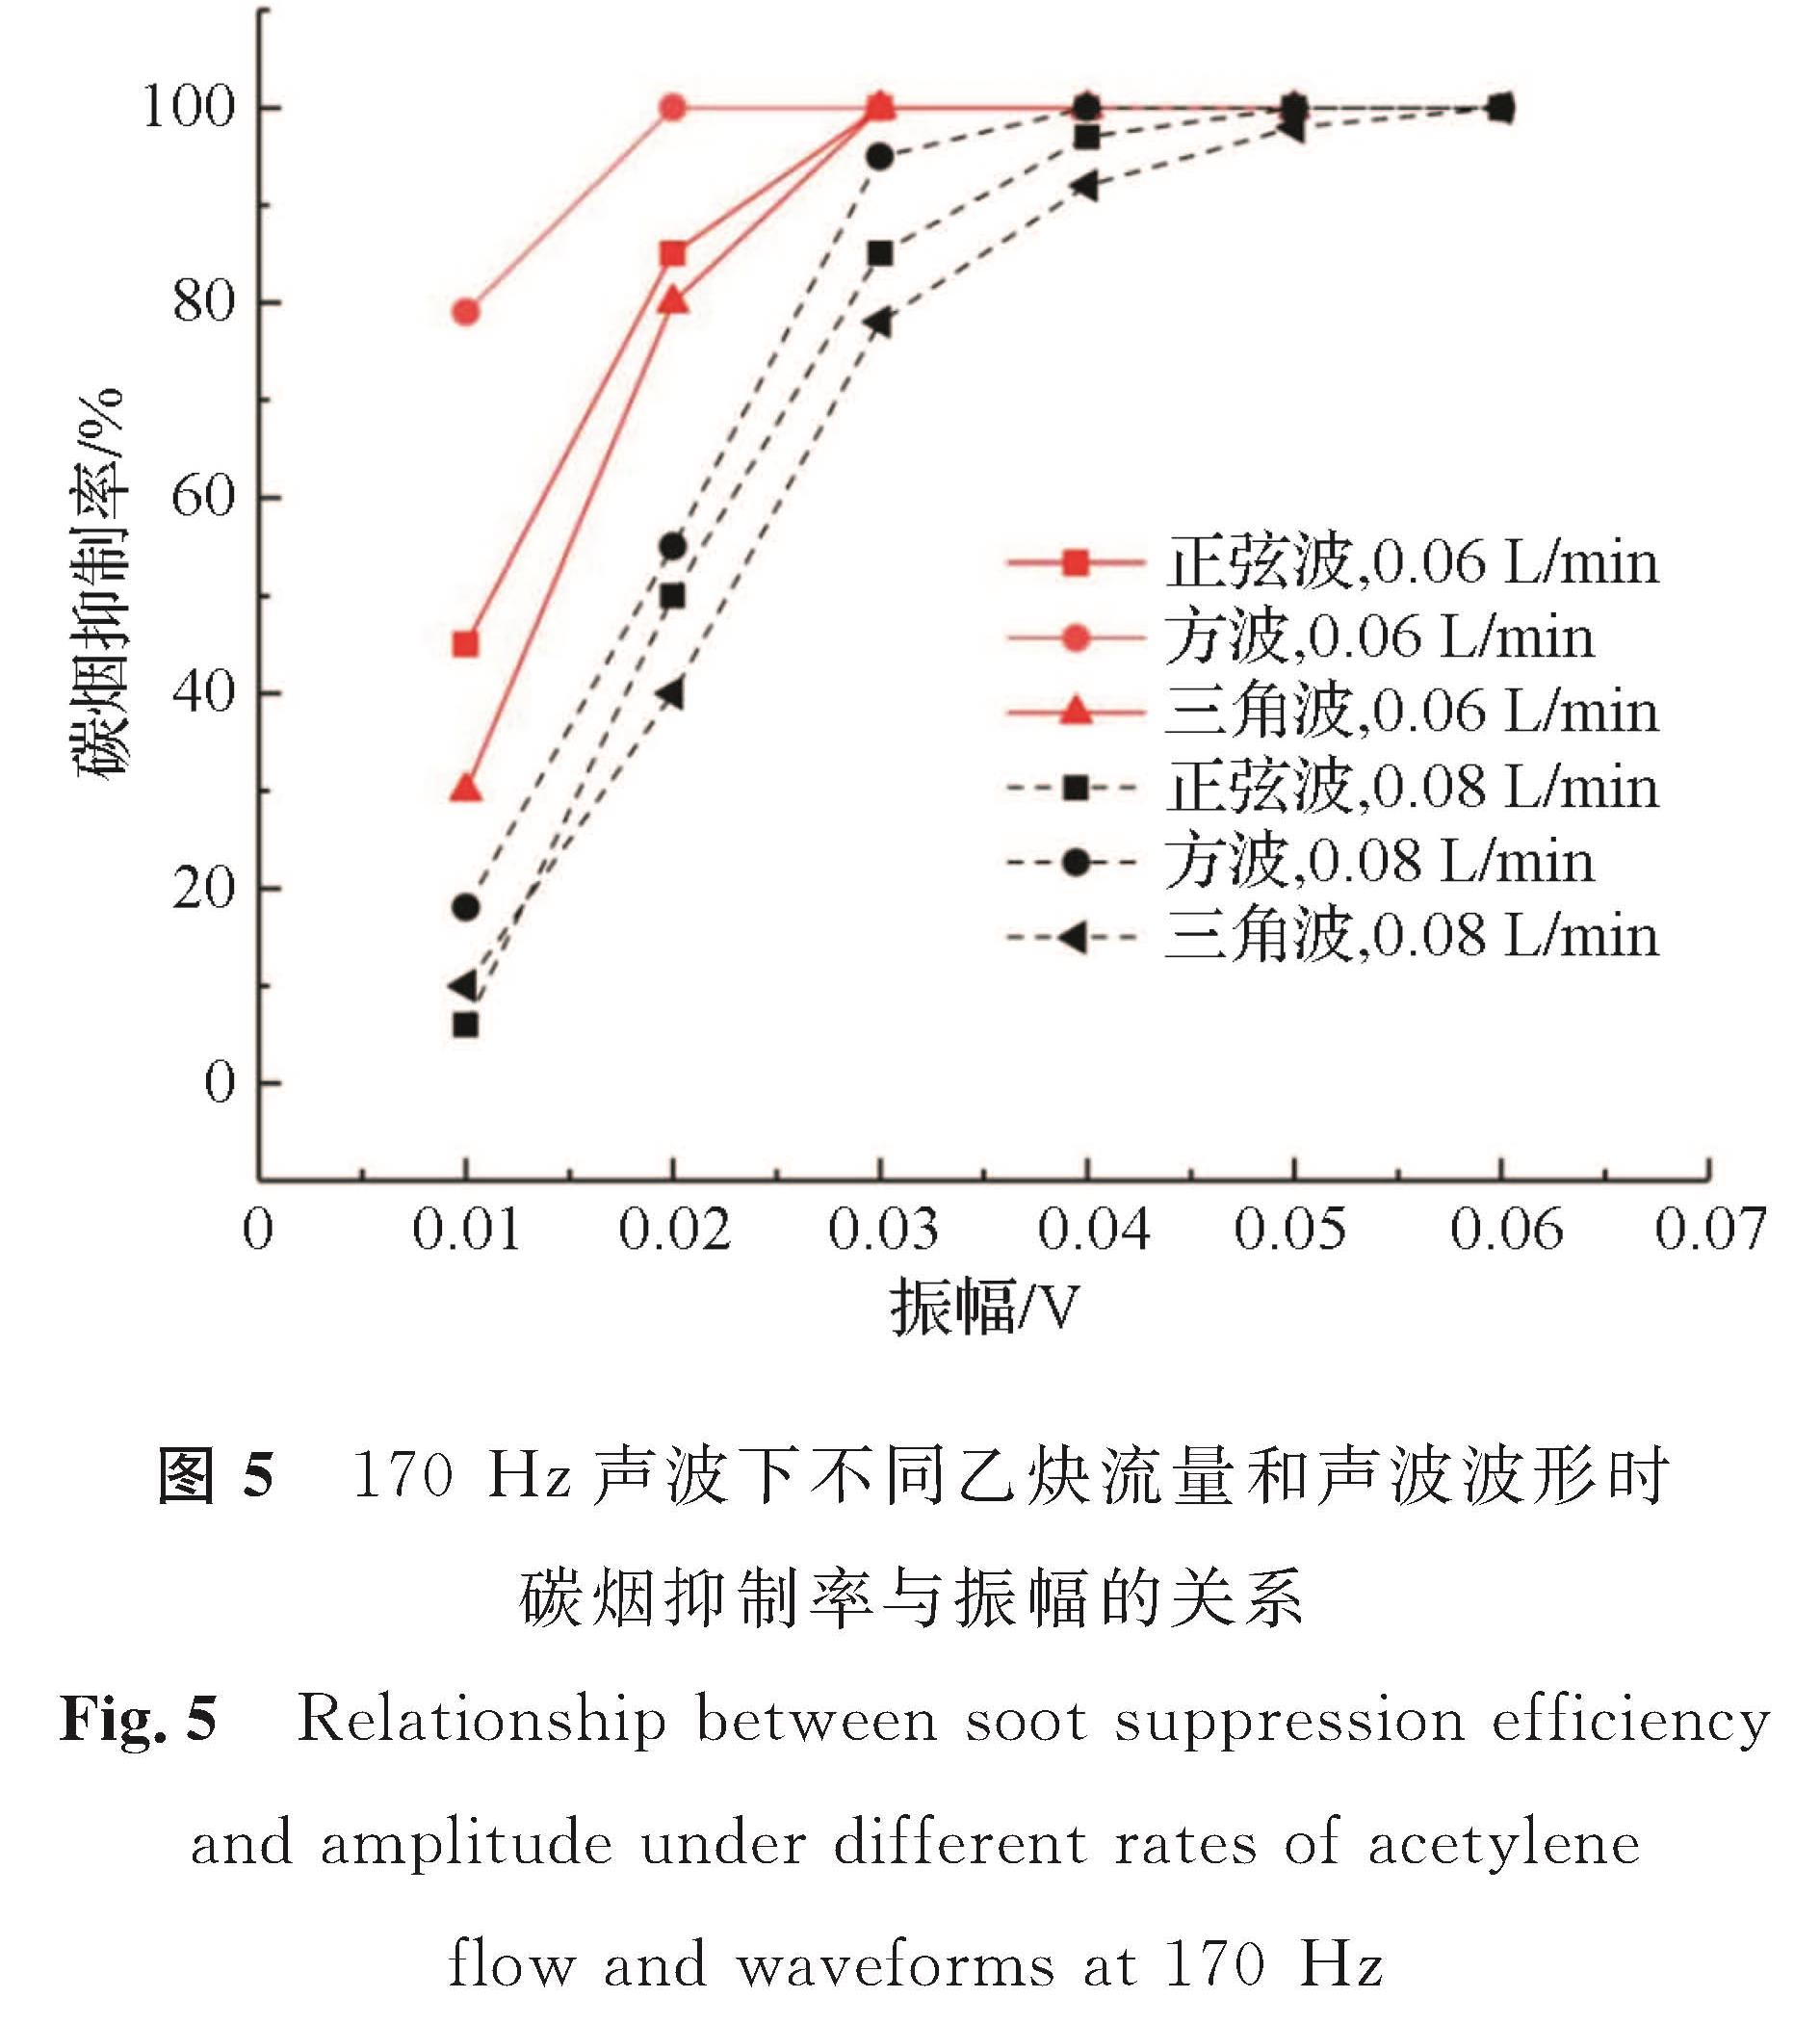 图5 170Hz声波下不同乙炔流量和声波波形时碳烟抑制率与振幅的关系<br/>Fig.5 Relationship between soot suppression efficiency and amplitude under different rates of acetylene flow and waveforms at 170 Hz